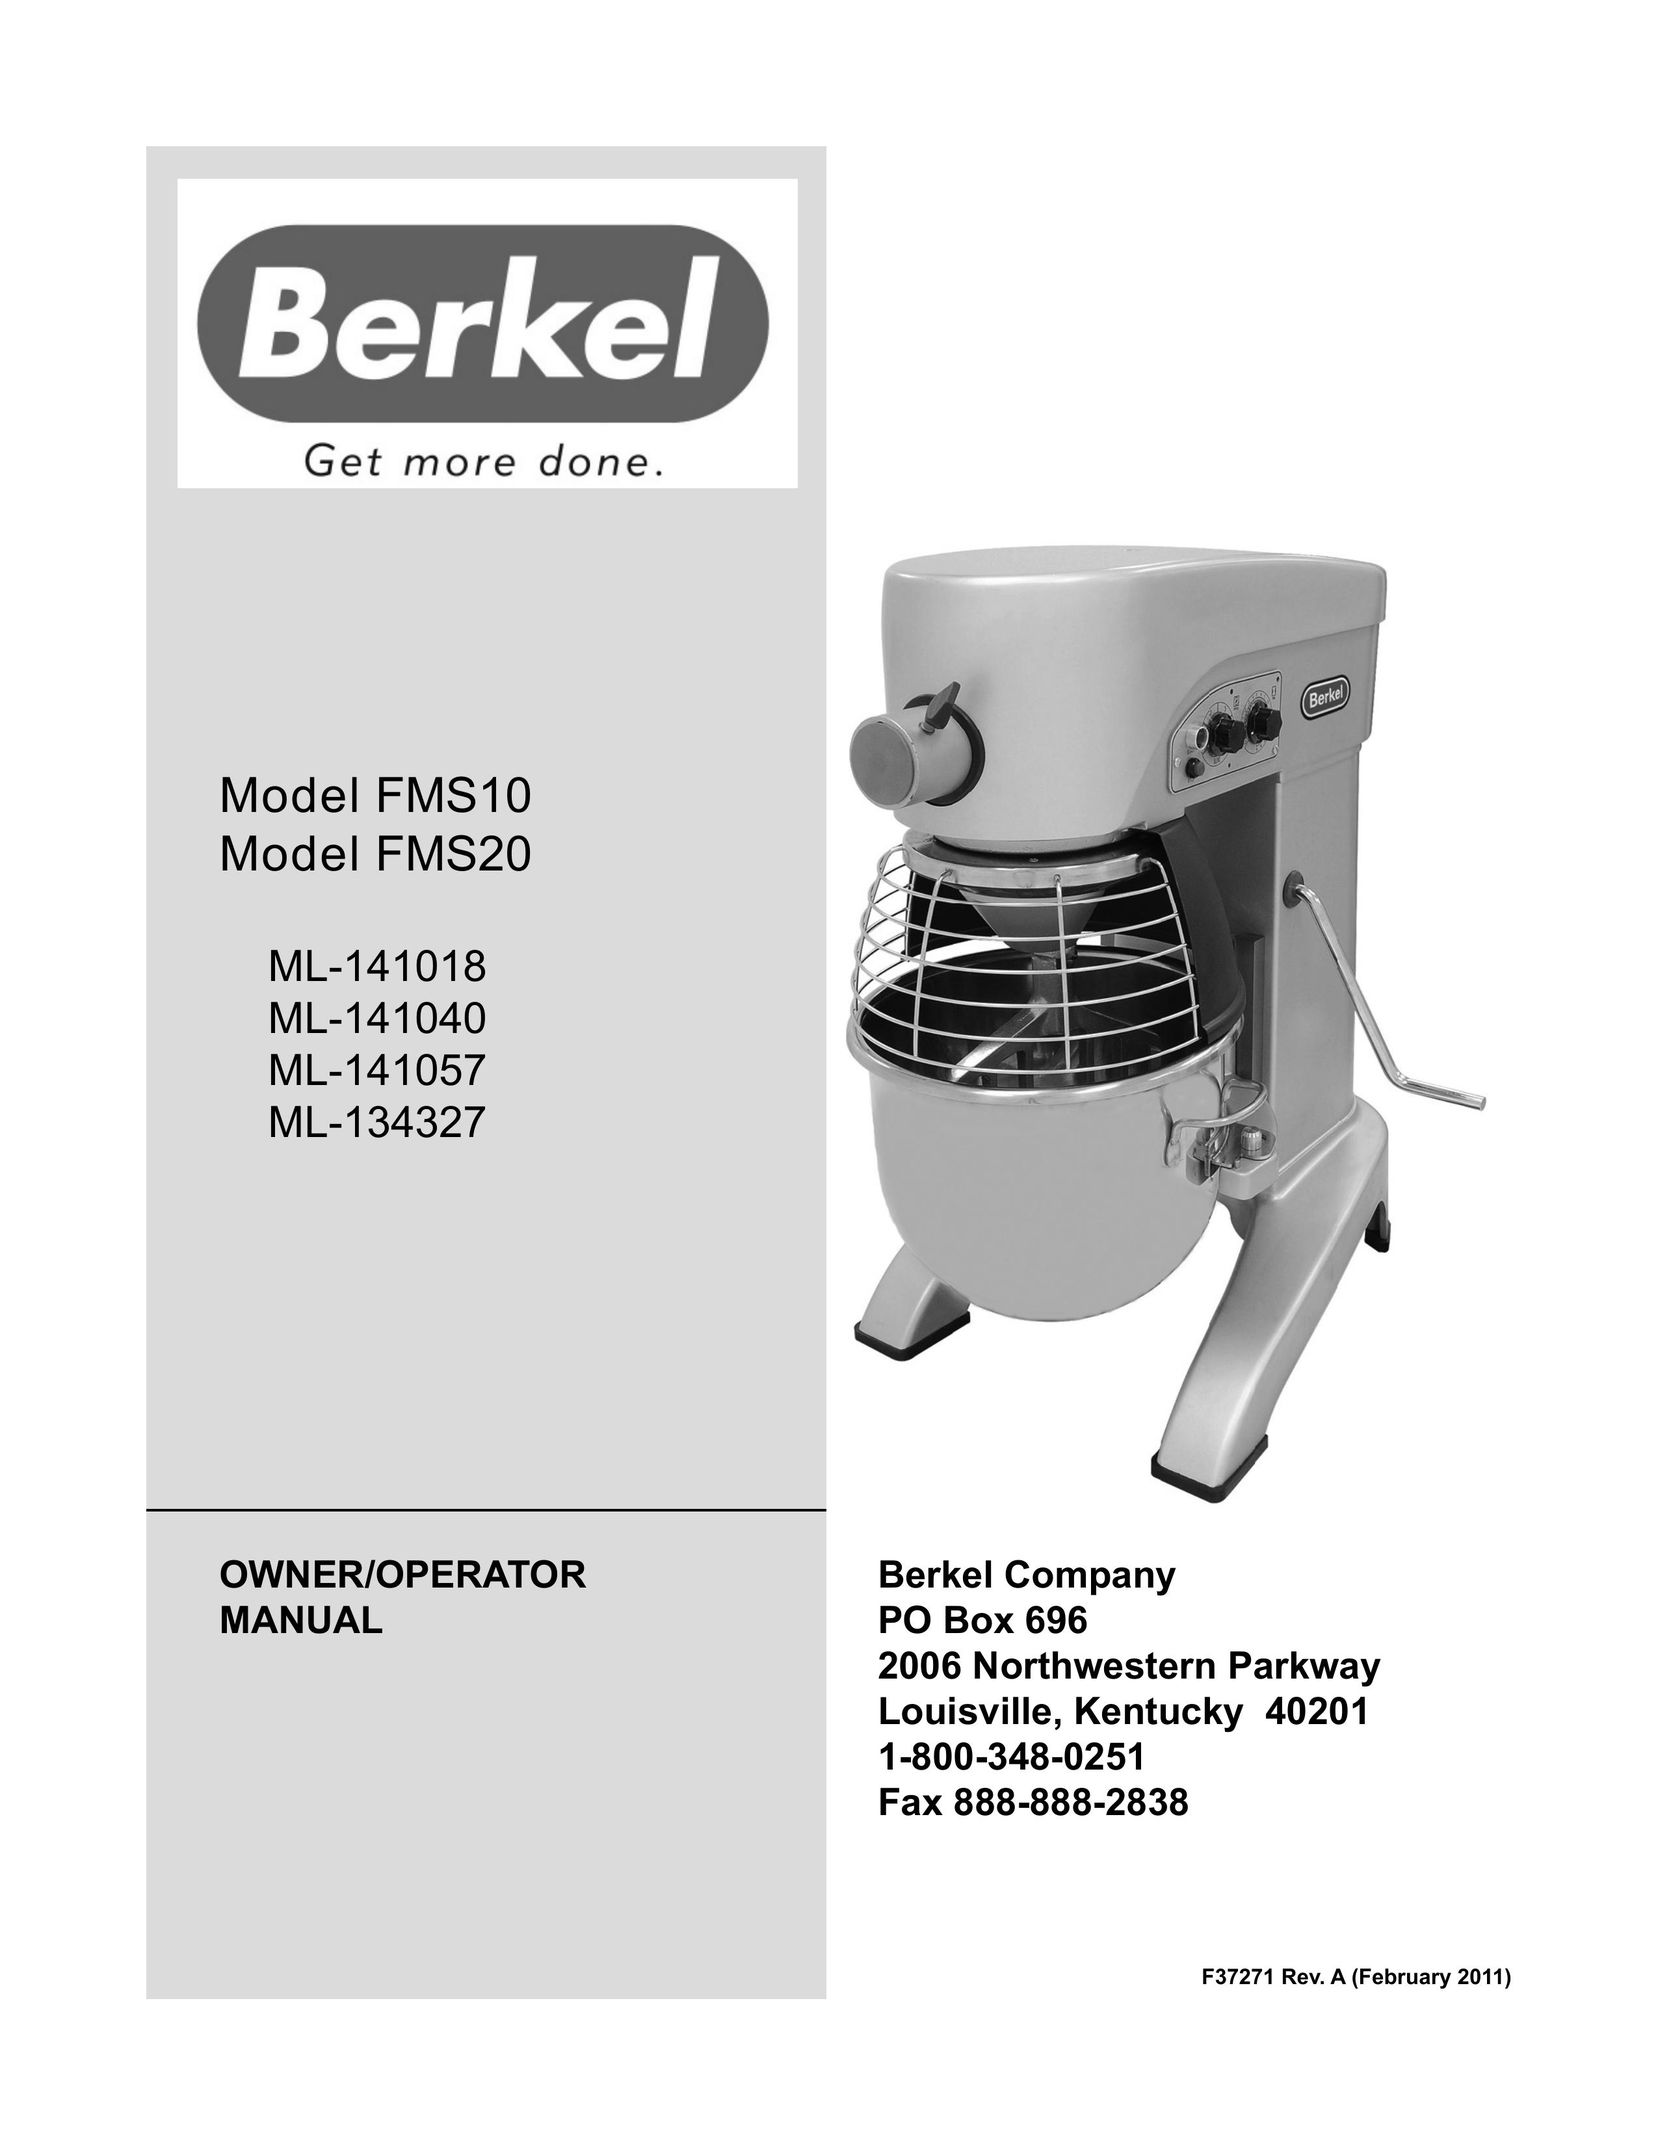 Berkel FMS20 Mixer User Manual